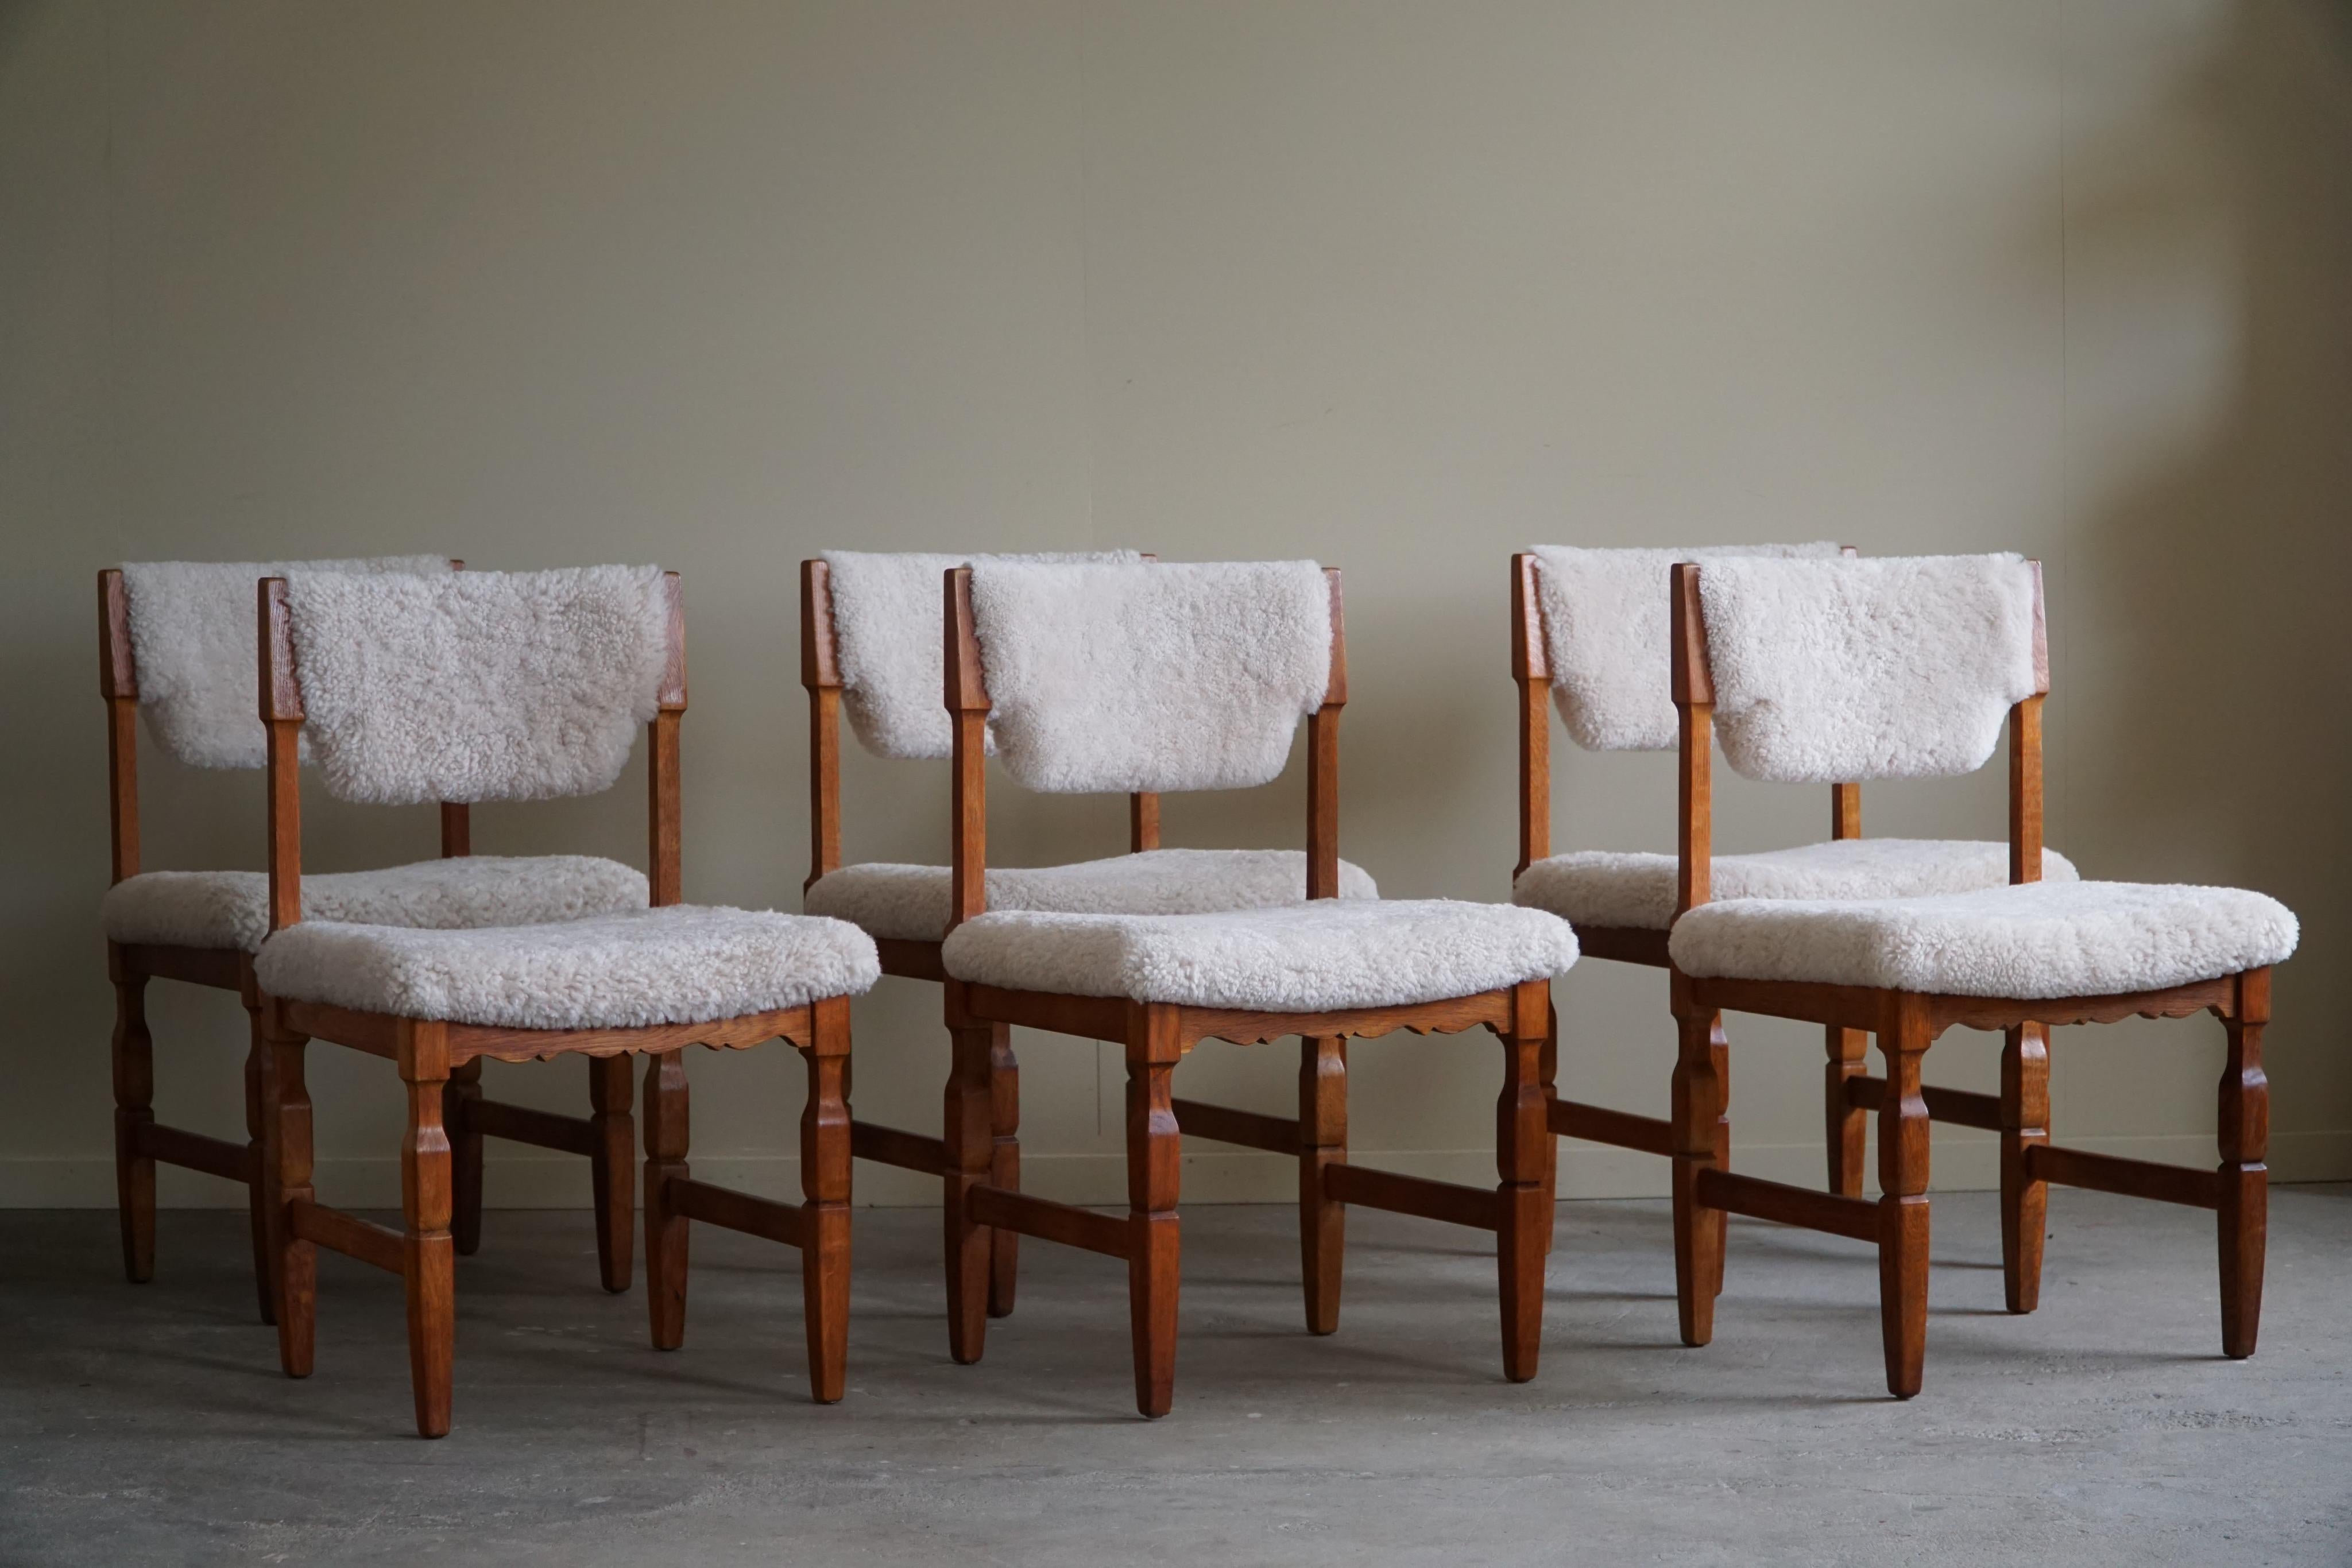 Erhöhen Sie Ihr Esserlebnis mit diesem bemerkenswerten Set aus sechs dänischen Mid Century Modern Esszimmerstühlen, einem wahren Zeugnis der zeitlosen Schönheit und Handwerkskunst der 1960er Jahre. Die aus Eichenholz gefertigten Stühle mit ihren neu